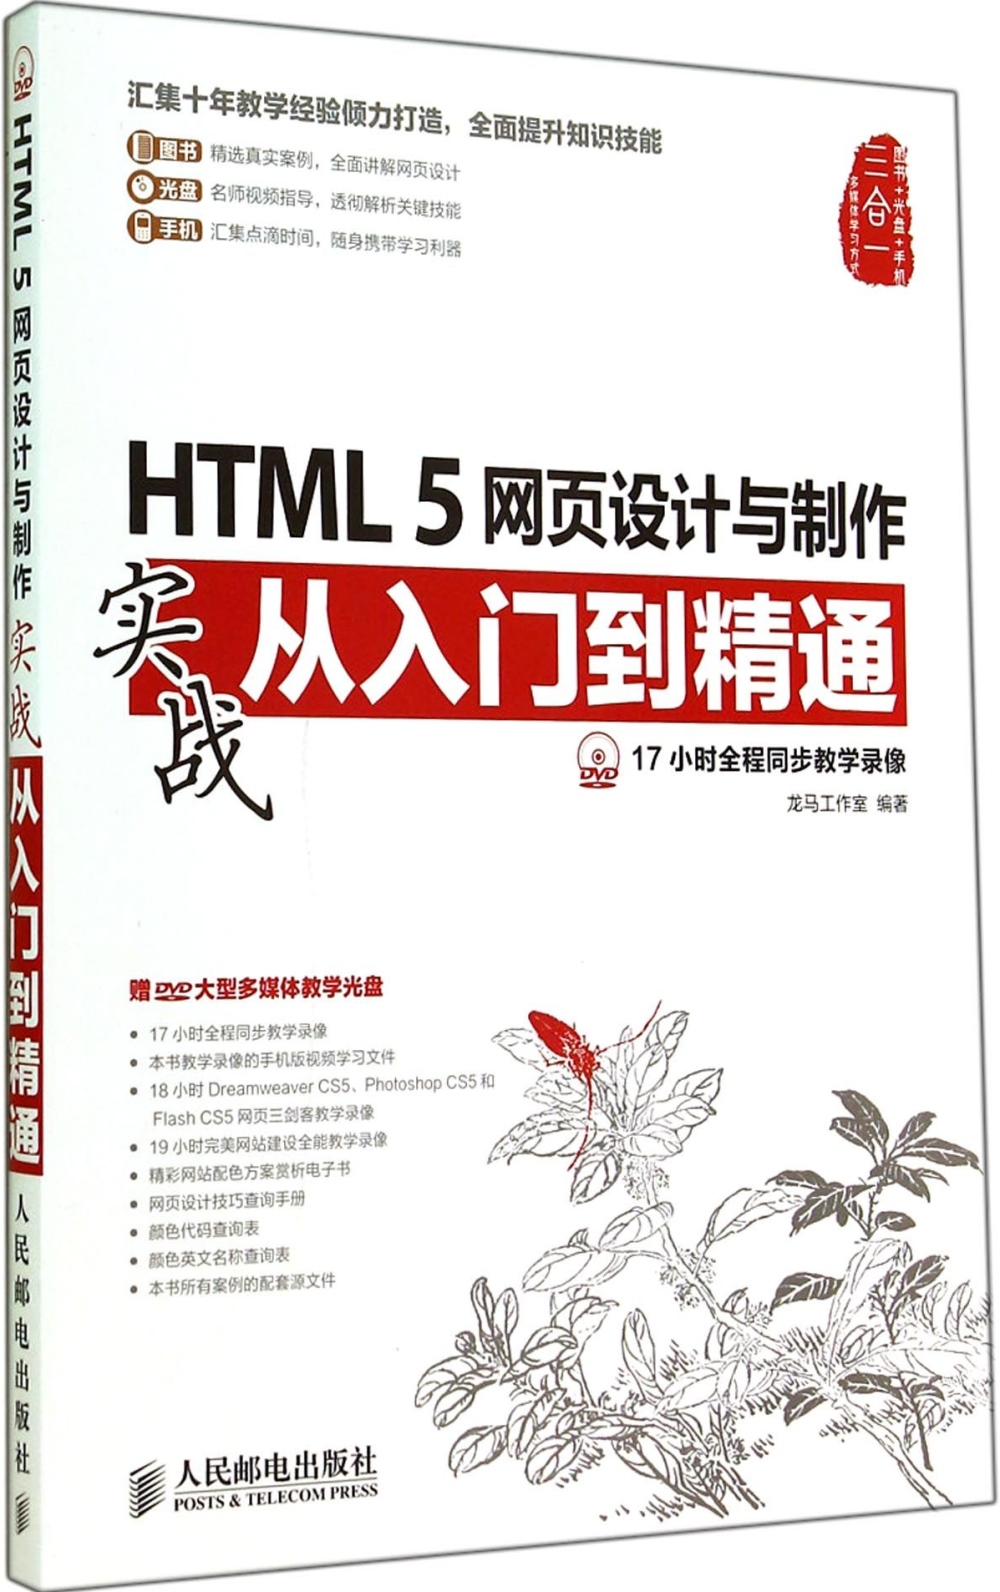 HTML 5網頁設計與制作實戰從入門到精通